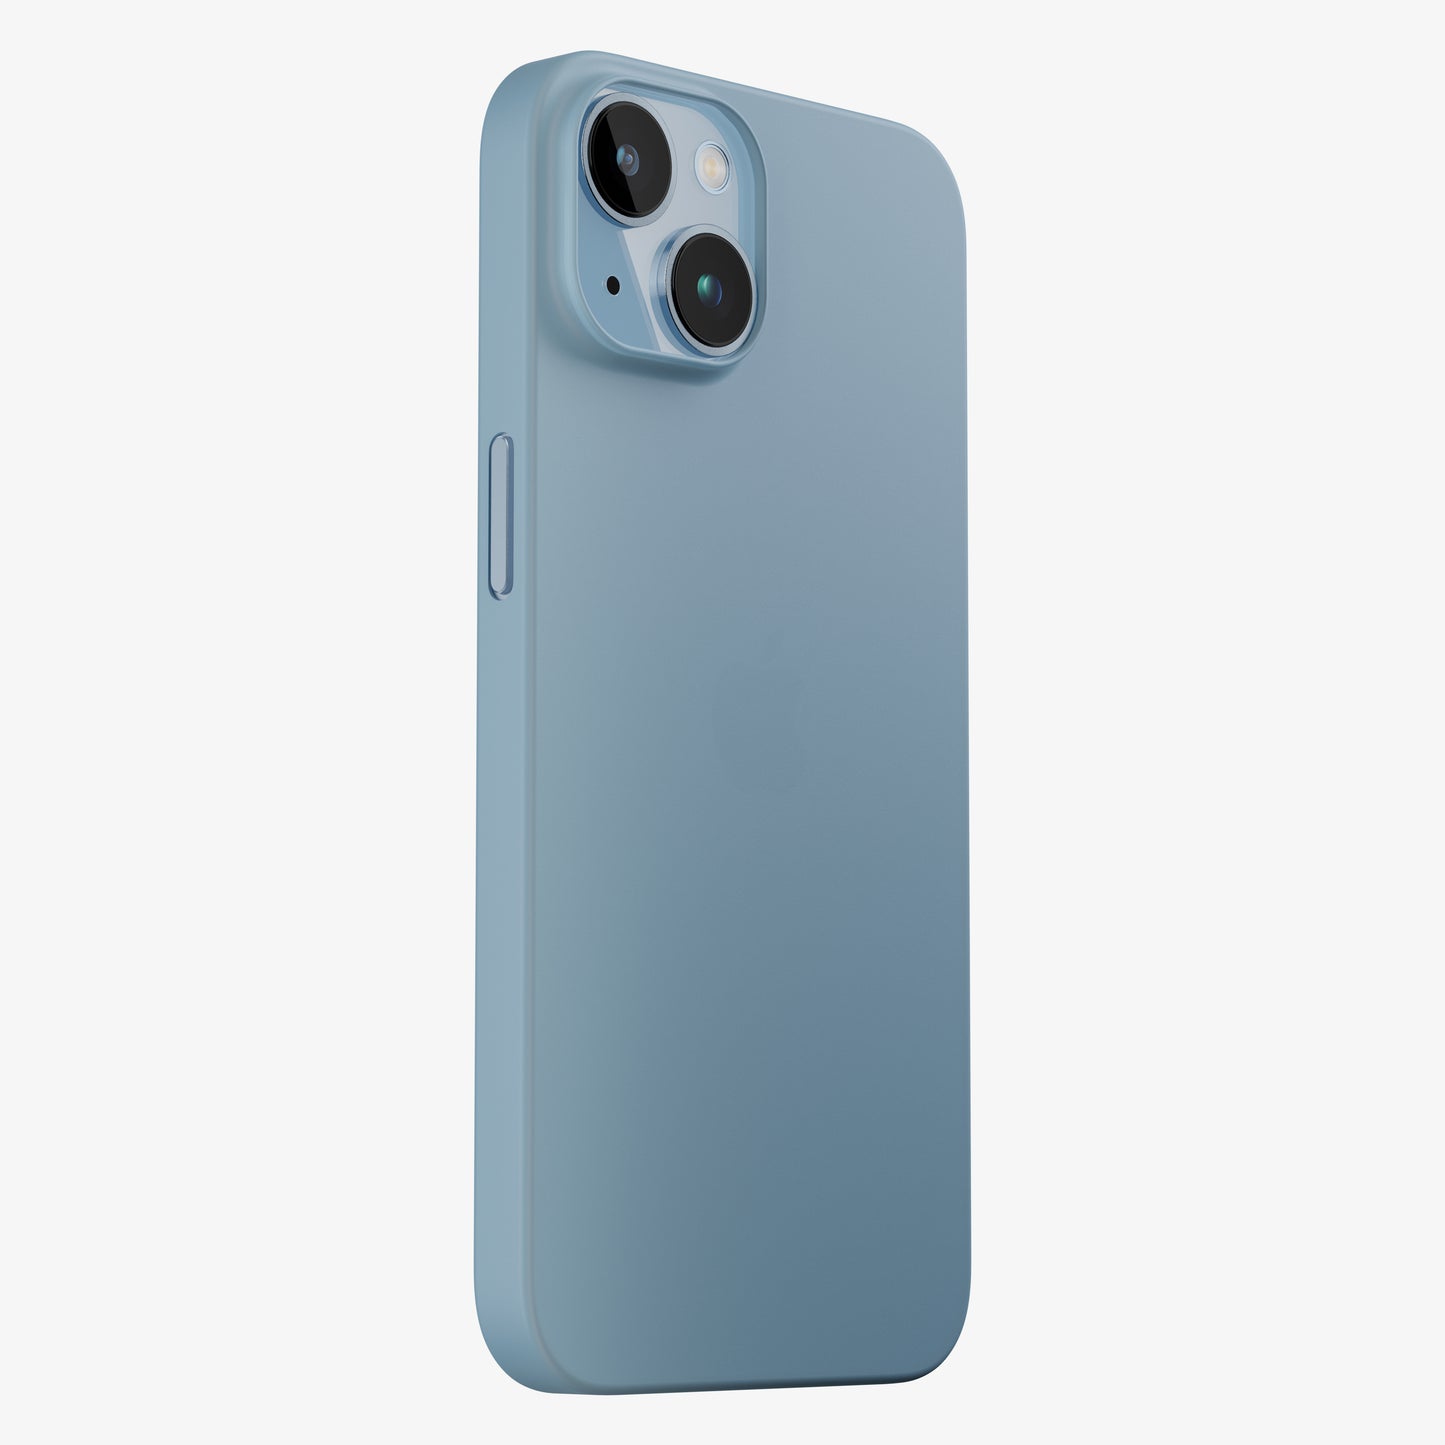 Coque bleue iPhone 14, 14 Pro, 14 Pro Max, 14 Plus - la plus fine du monde avec 0.33mm d'épaisseur